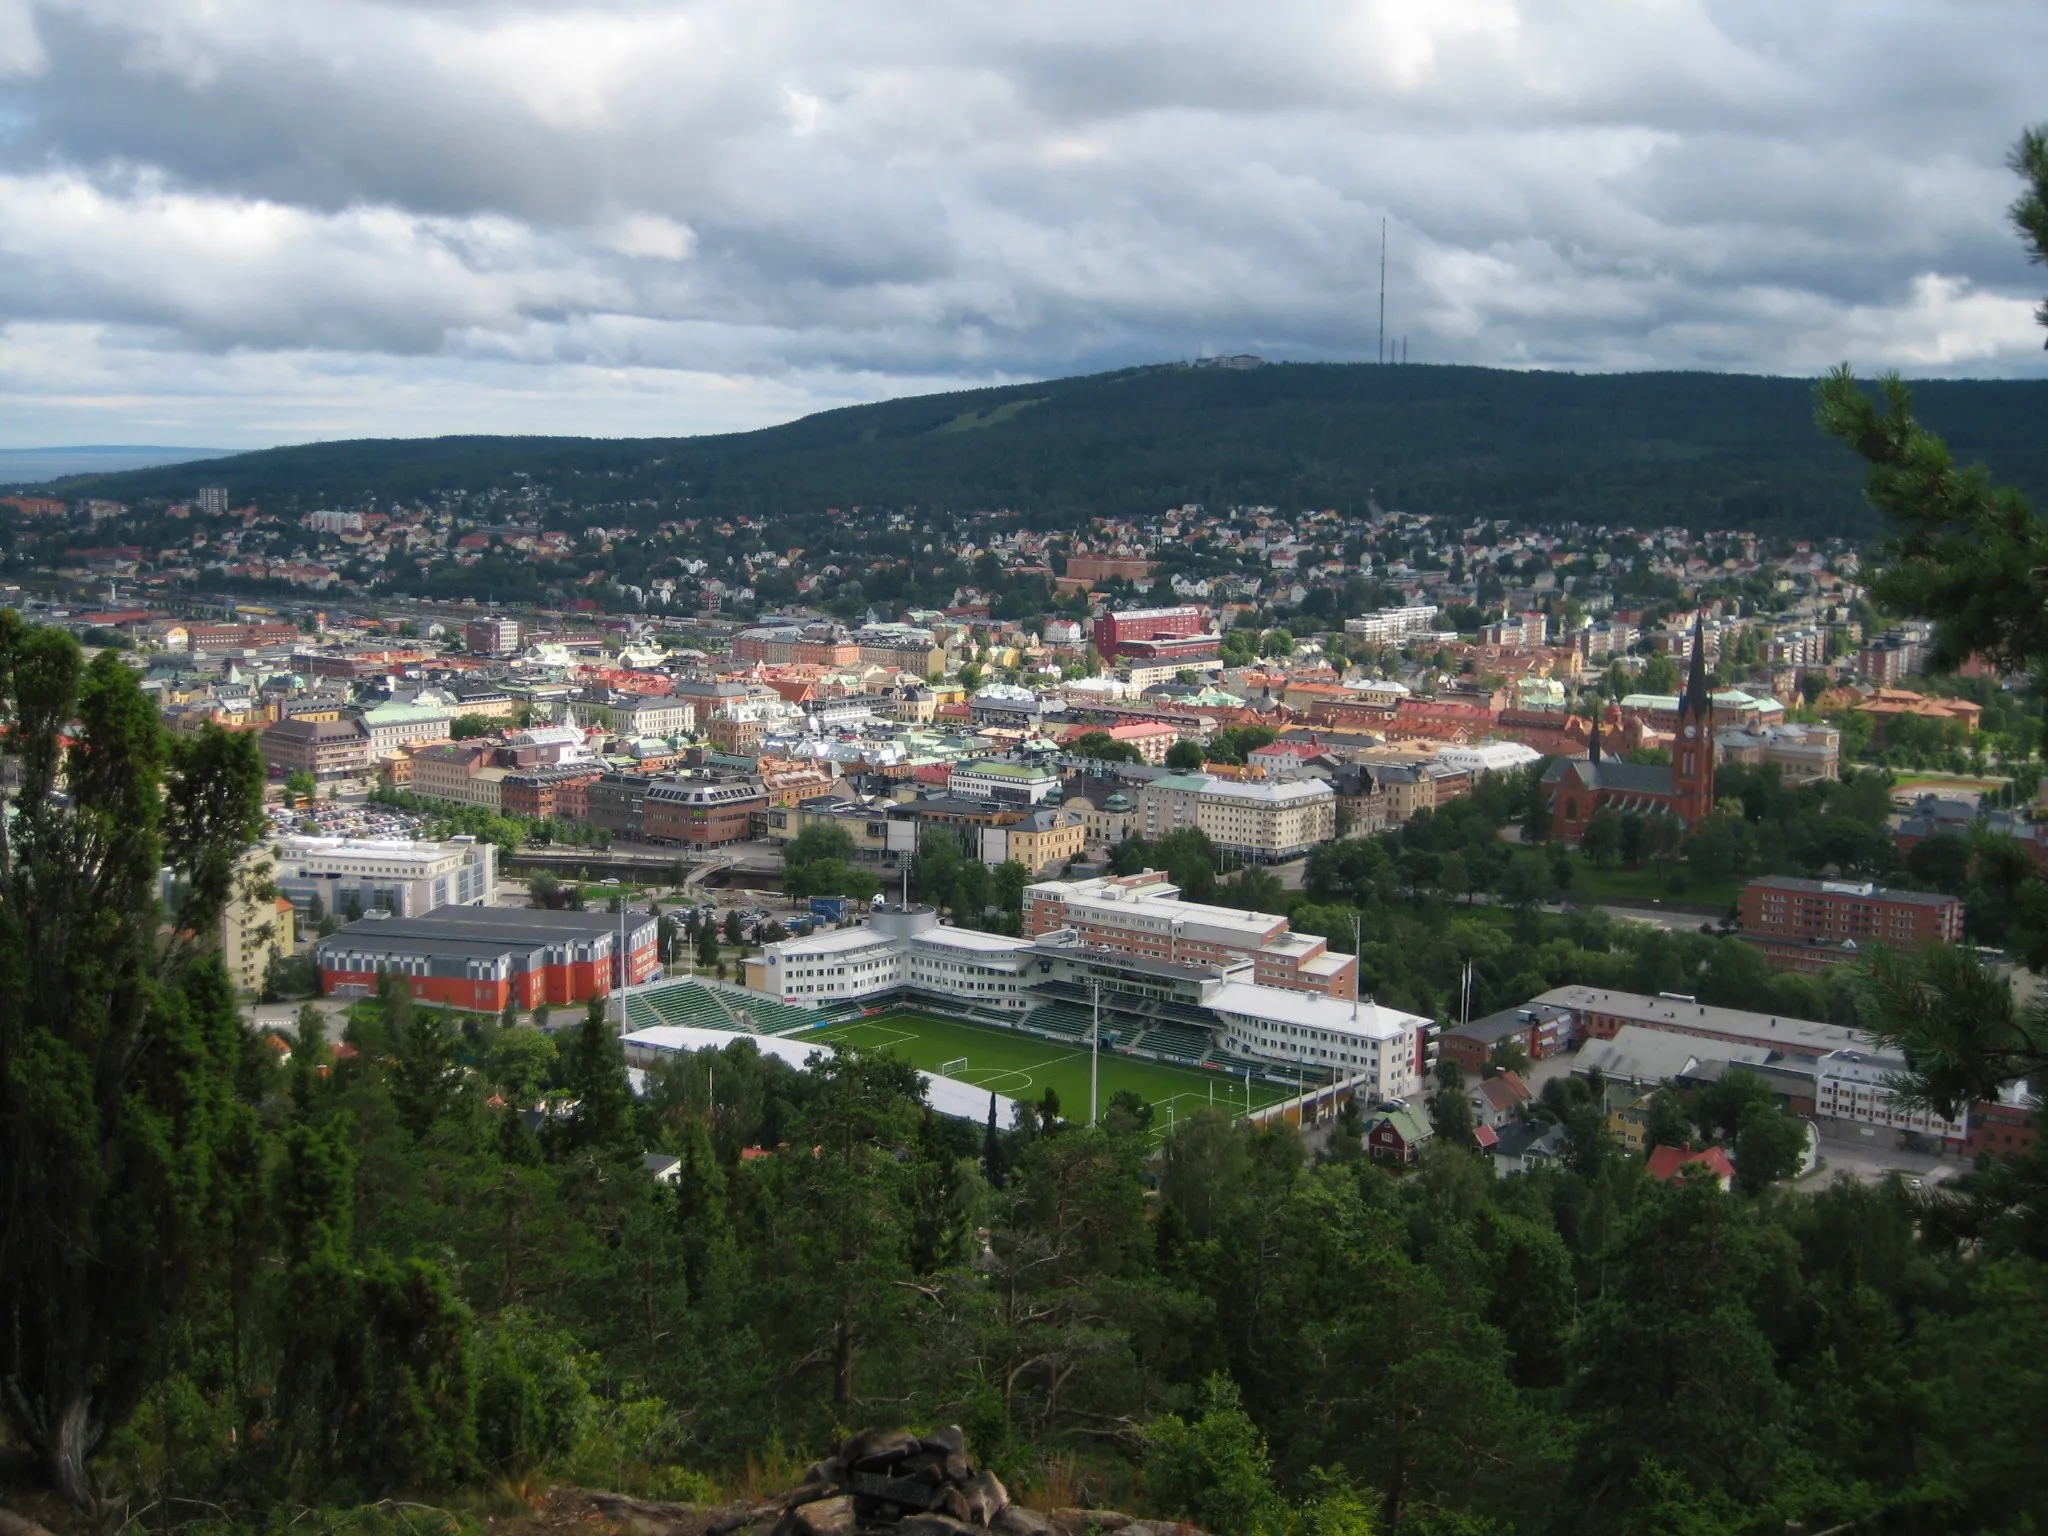 Image of Sundsvall